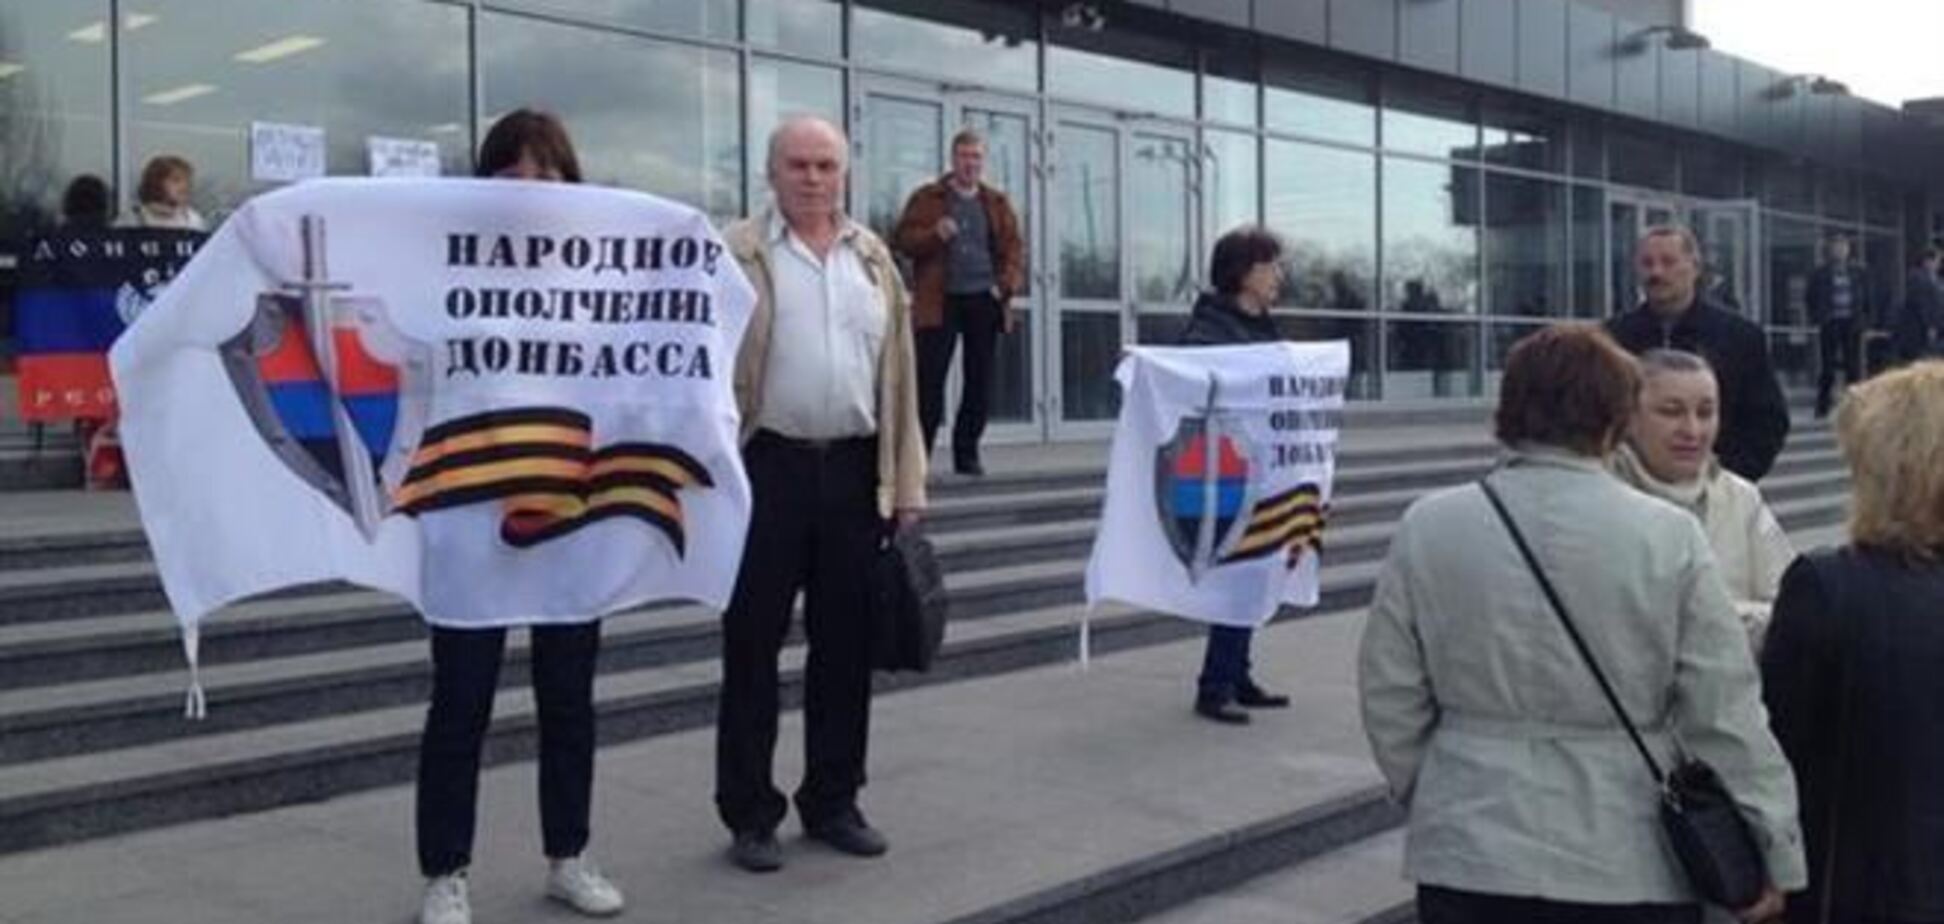 Сторонники 'Донецкой республики' пикетируют съезд Партии регионов